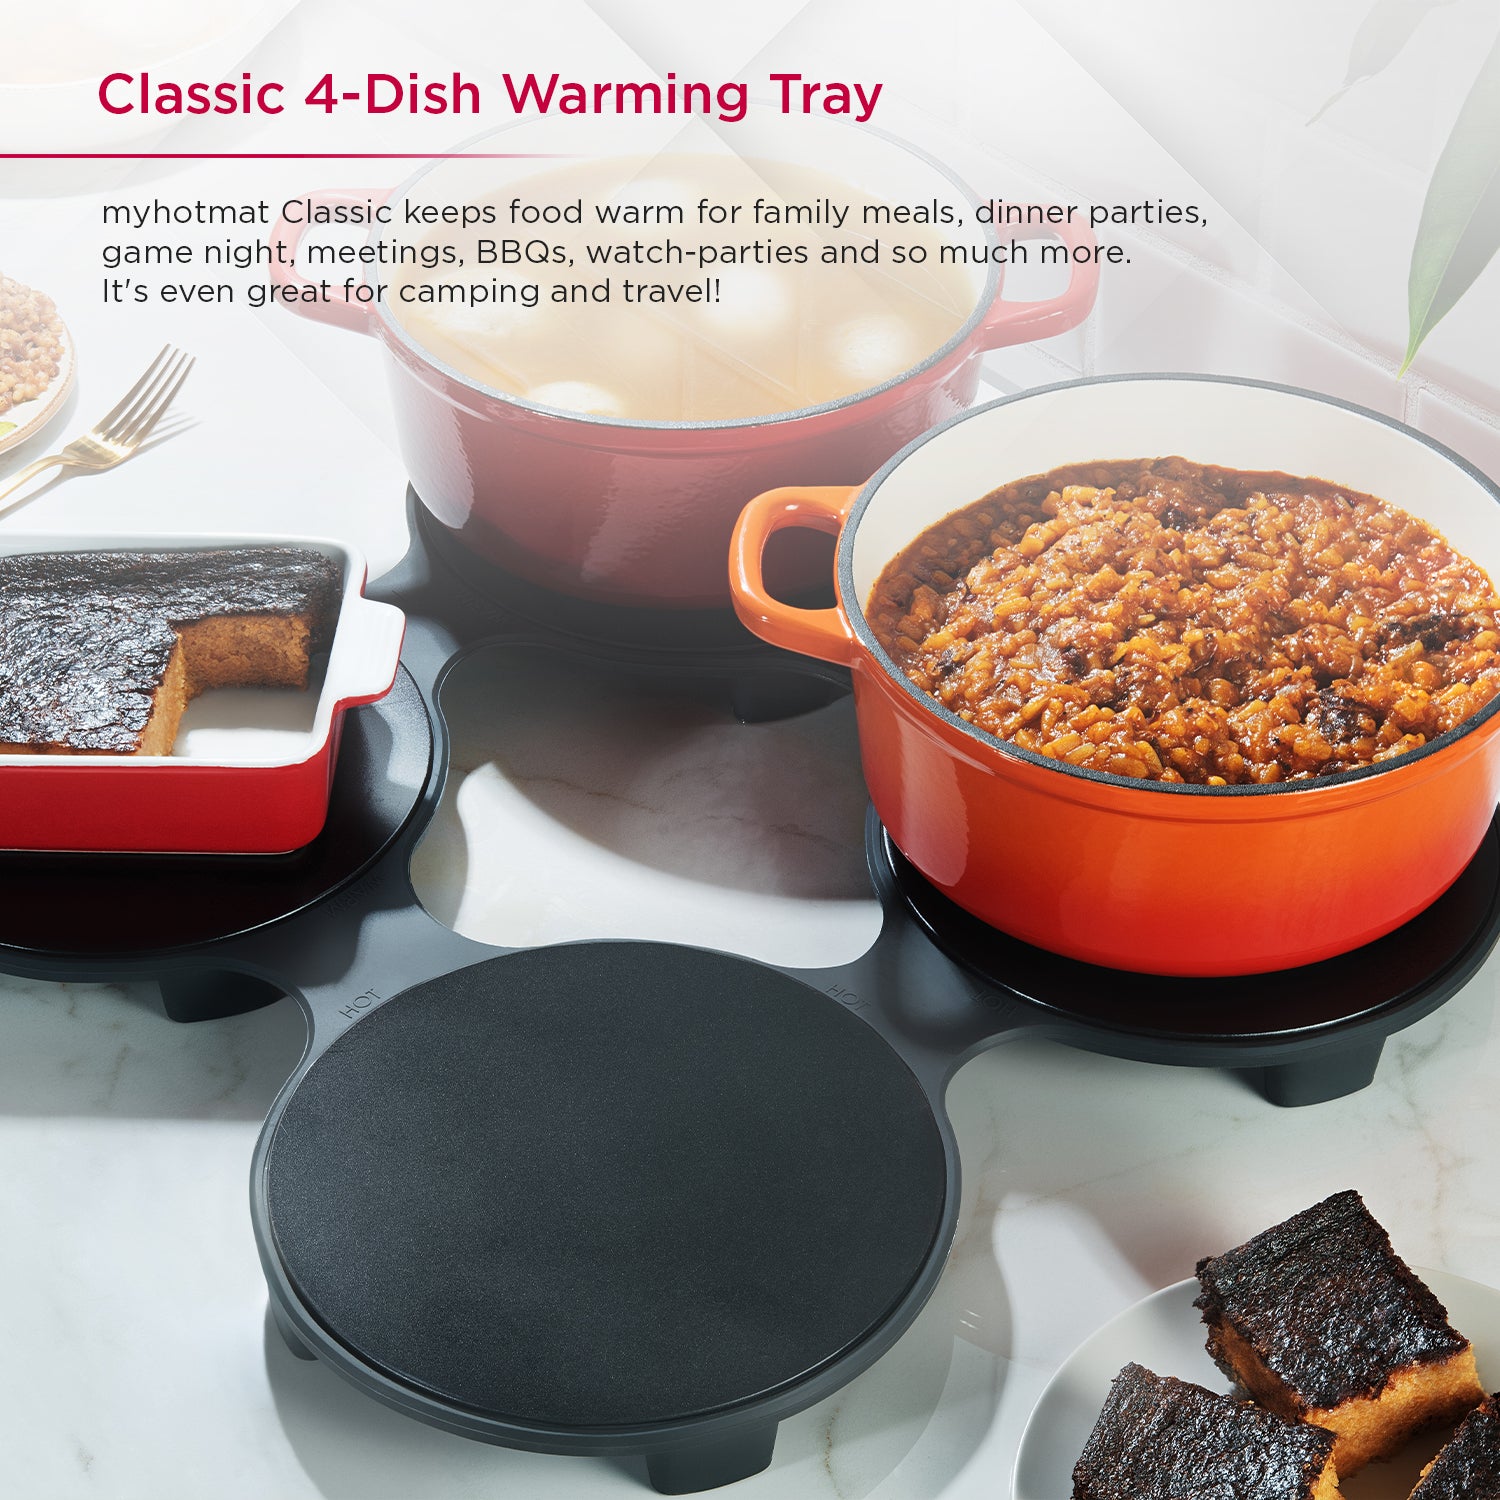 300w Mini Electric Stove Iron Hot Plate Tea Coffee Pot Warmer